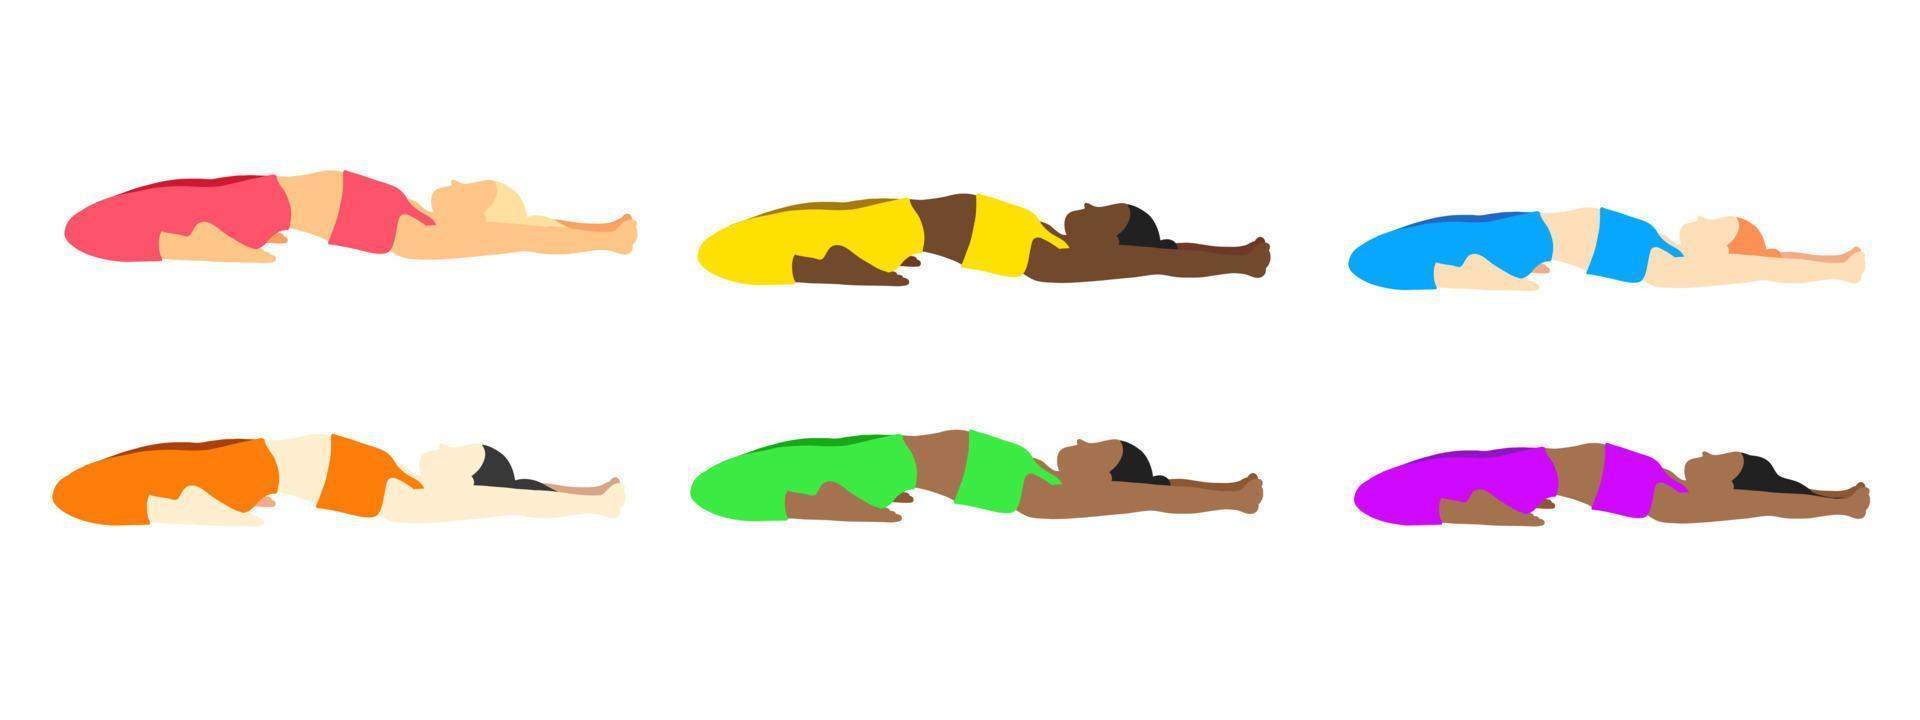 flexibilidad yoga poses recopilación. europeo, africano, asiático femenino, dama, mujer, muchacha. pilates, mental salud, capacitación, gimnasia. vector ilustración en dibujos animados plano estilo aislado en blanco antecedentes.